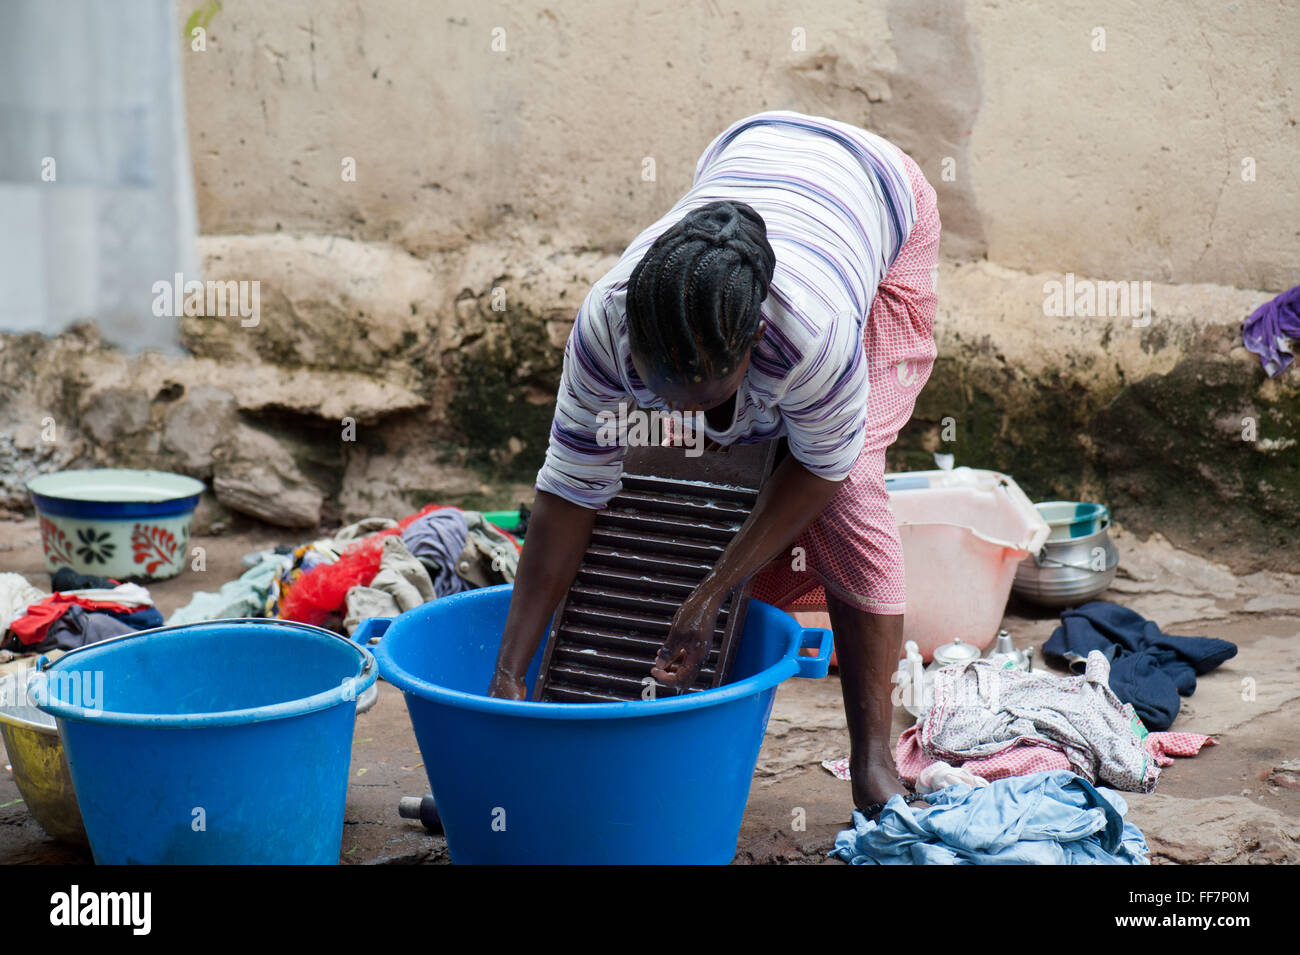 Malí, África - Joven lavando ropa en una aldea cerca de Bamako Foto de stock